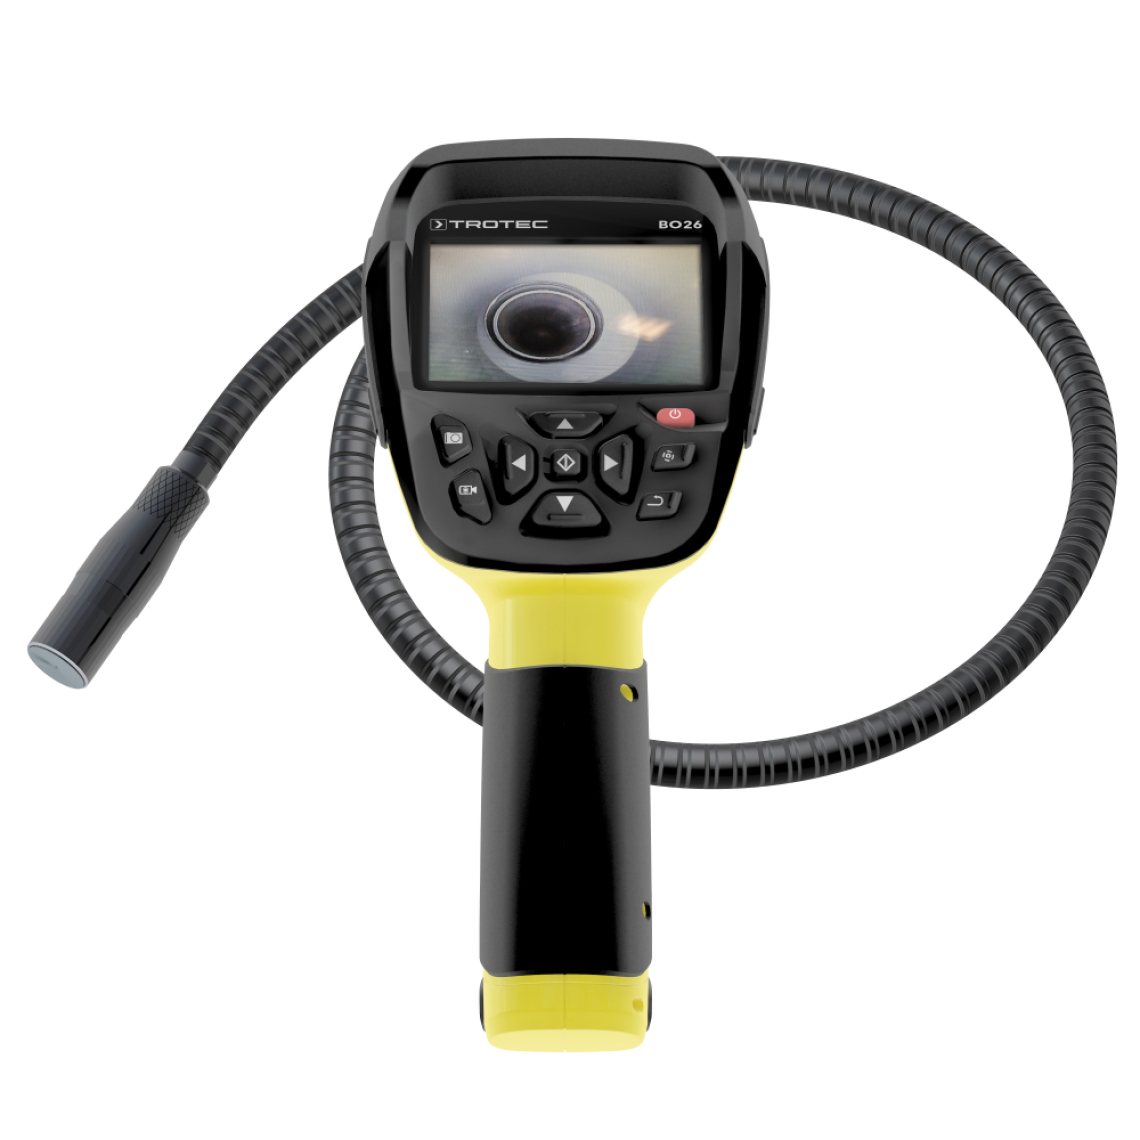 Trotec - TROTEC Caméra d'inspection endoscope vidéo BO26 - Caméra de surveillance connectée